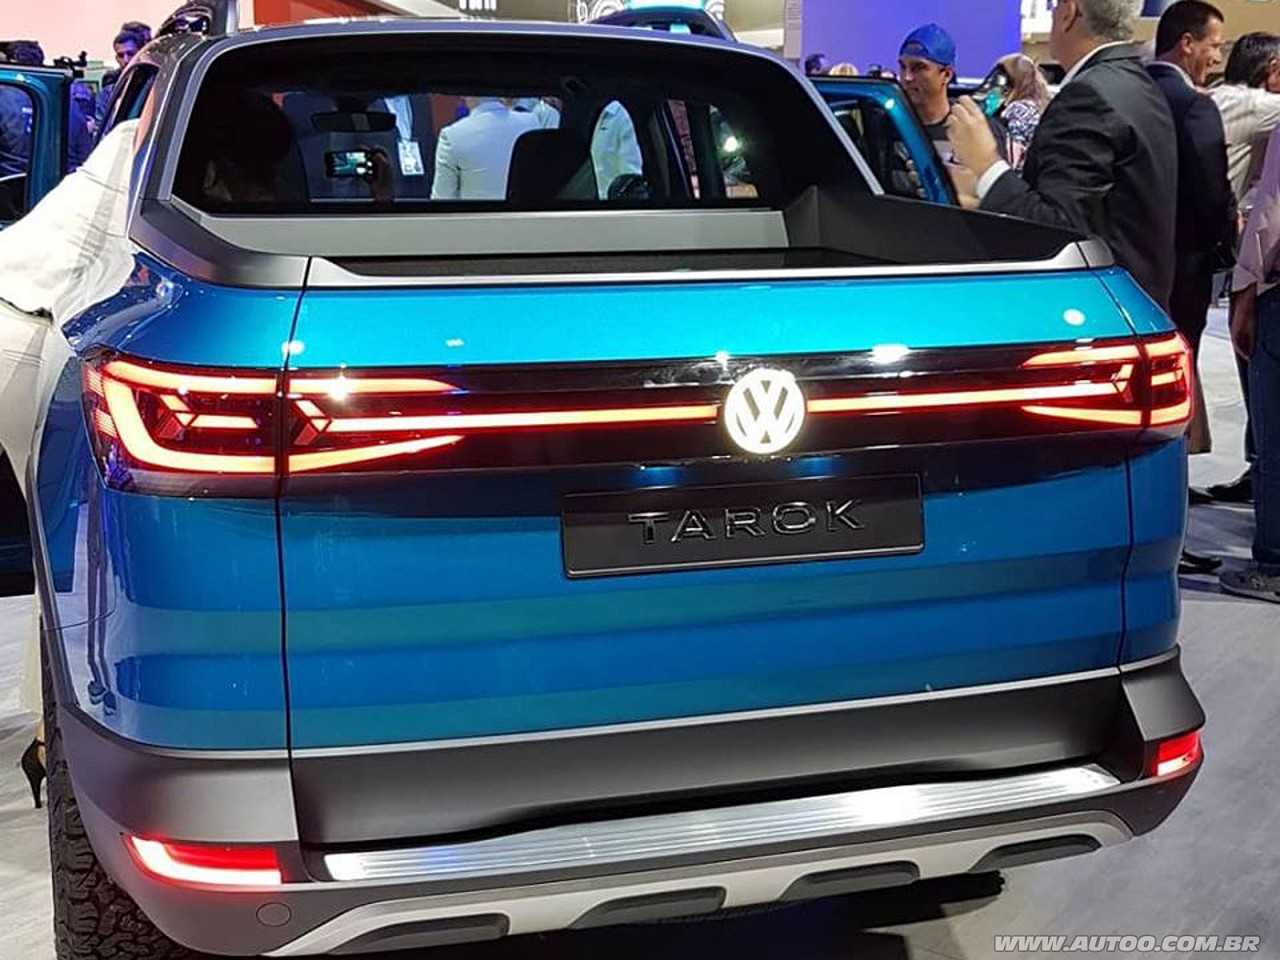 VolkswagenTarok 2020 - ngulo frontal